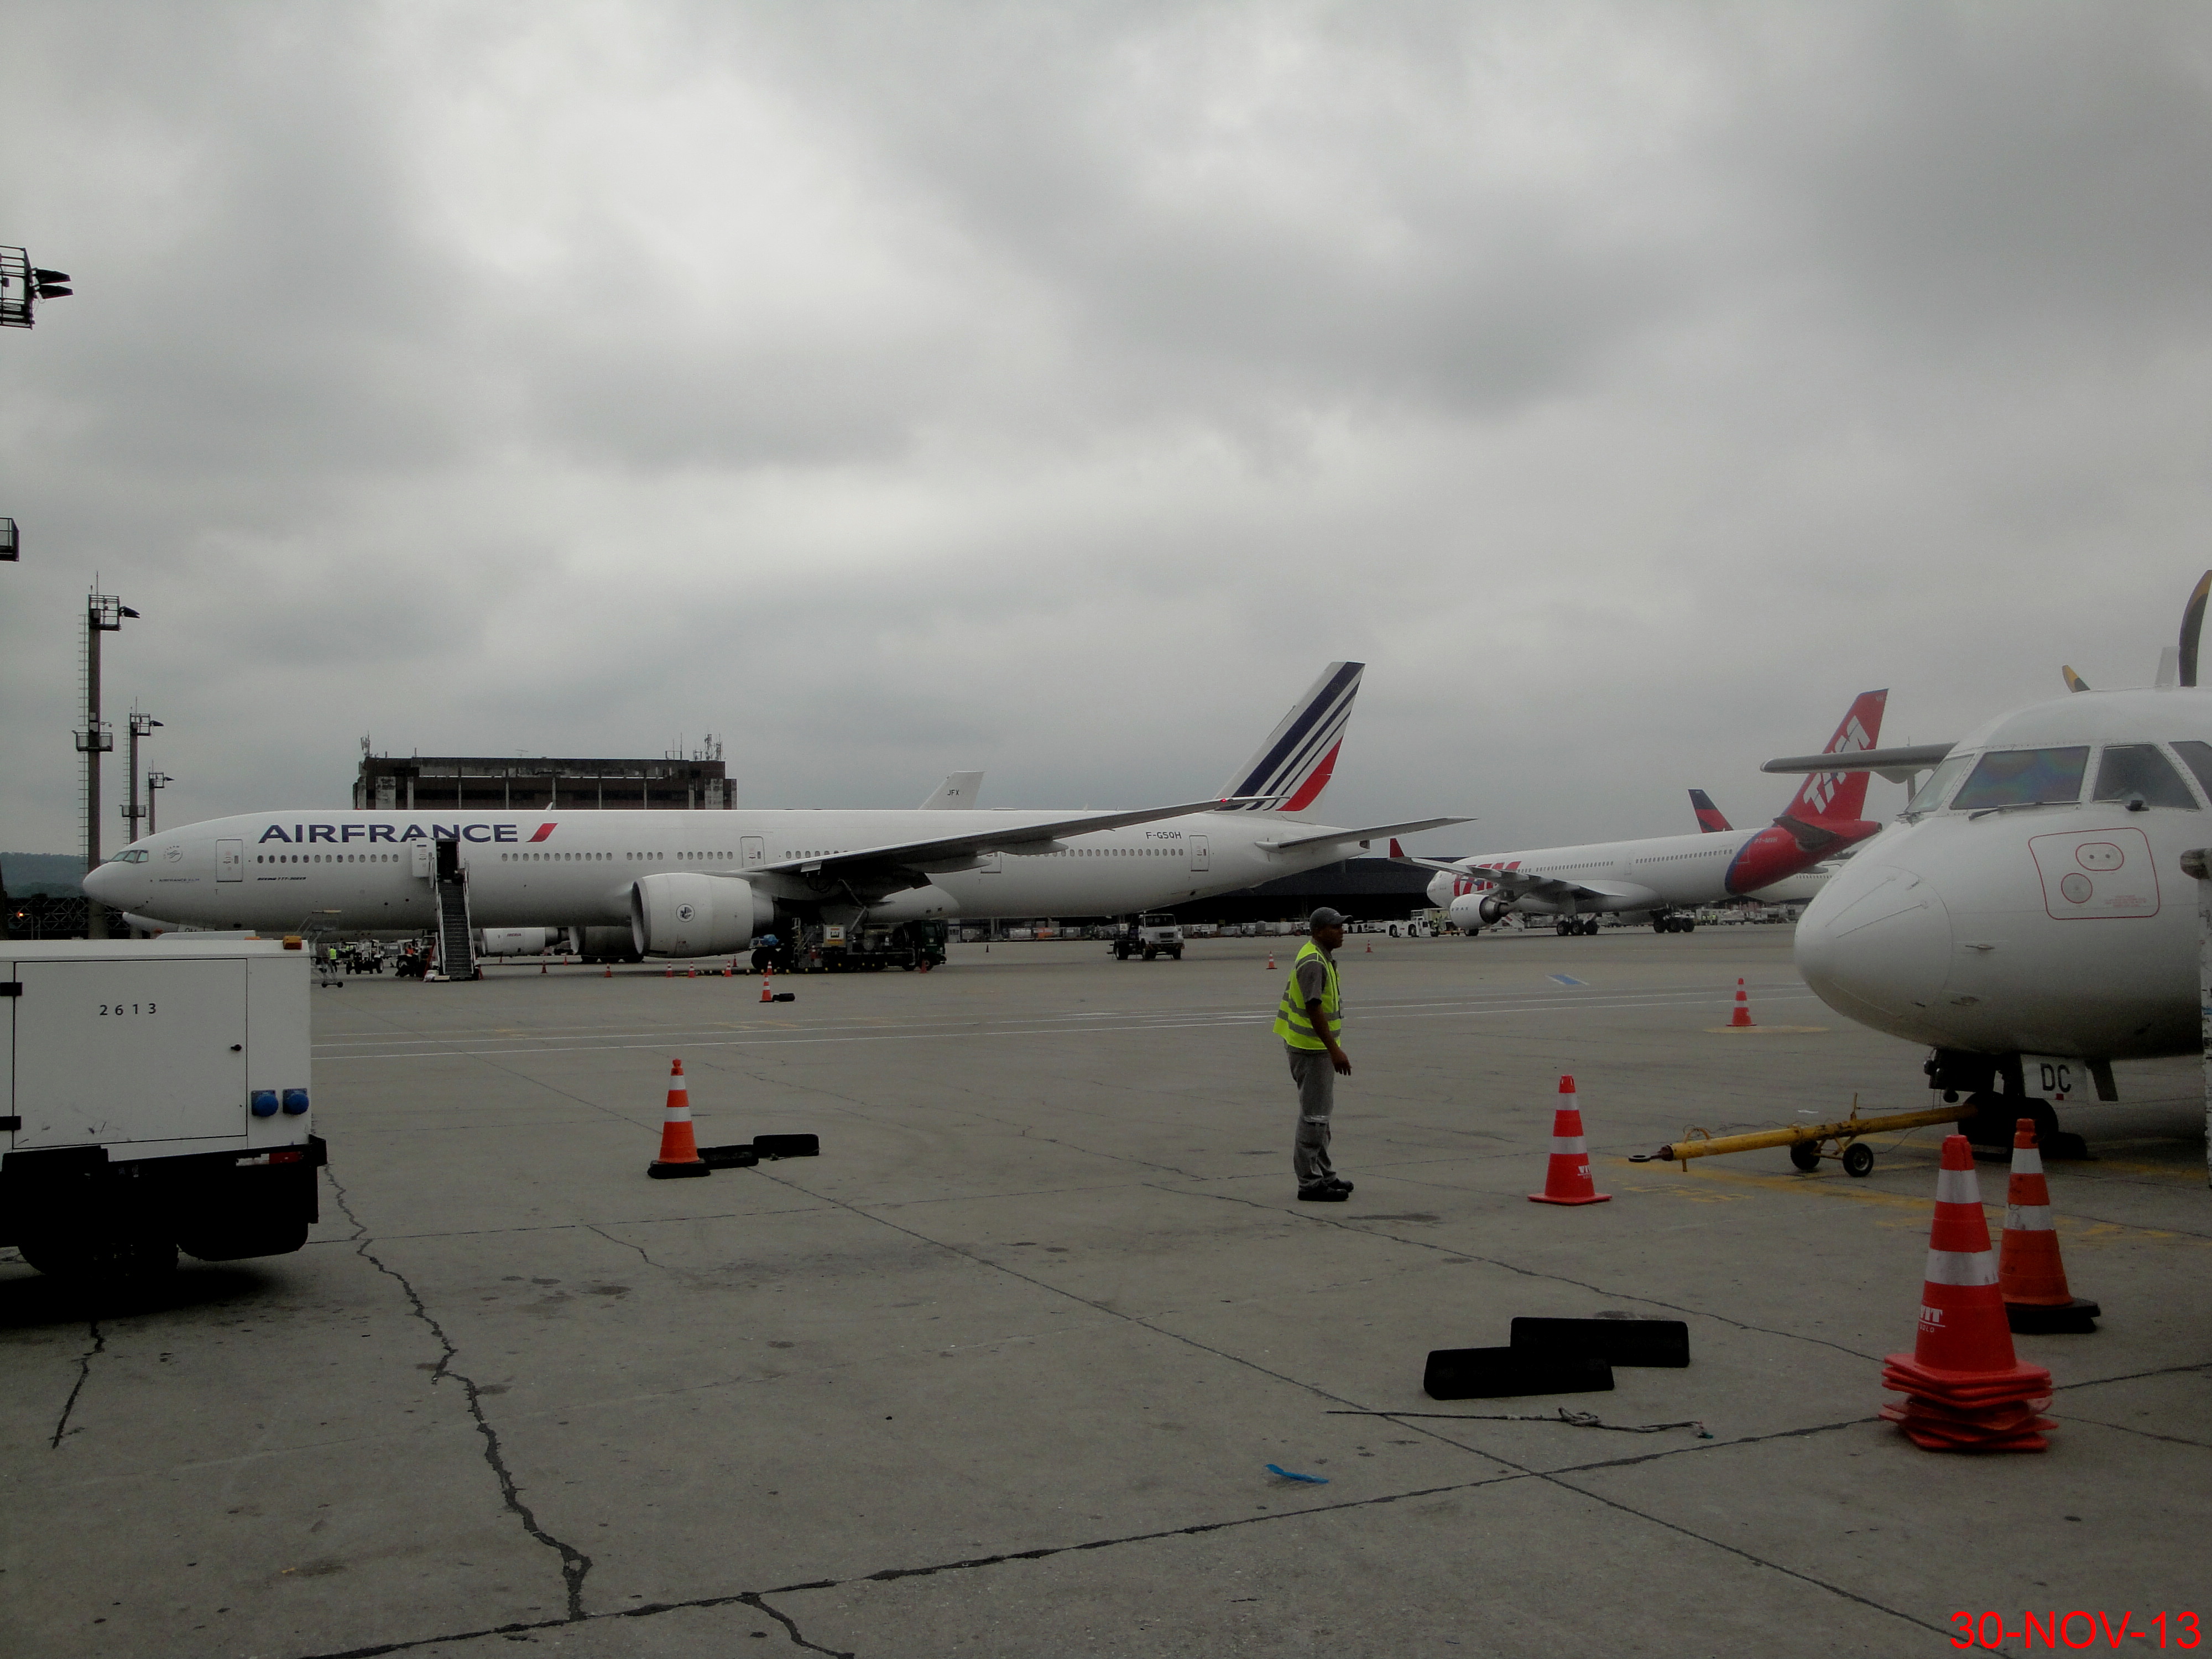 File:Air France Boeing 777-300ER.jpg - Wikipedia